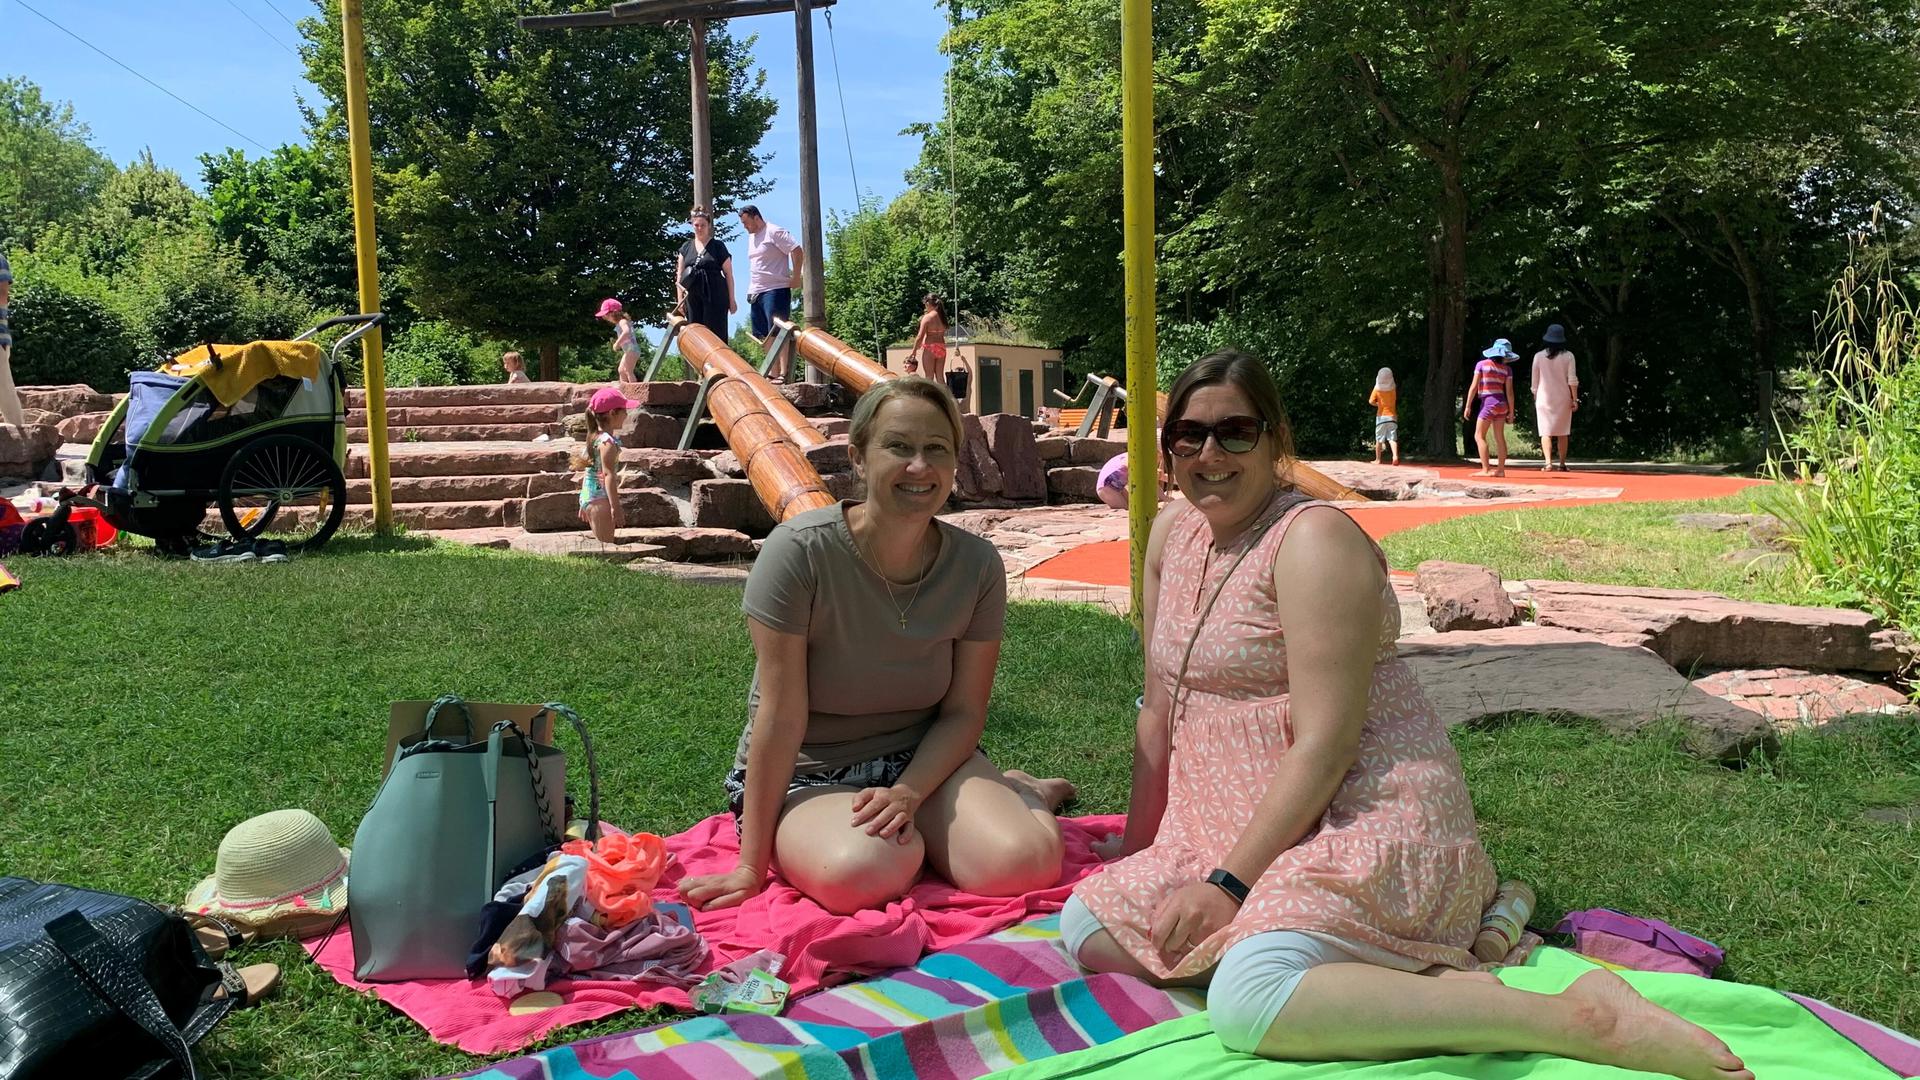 Zwei Frauen sitzen auf einer Picknickdecke